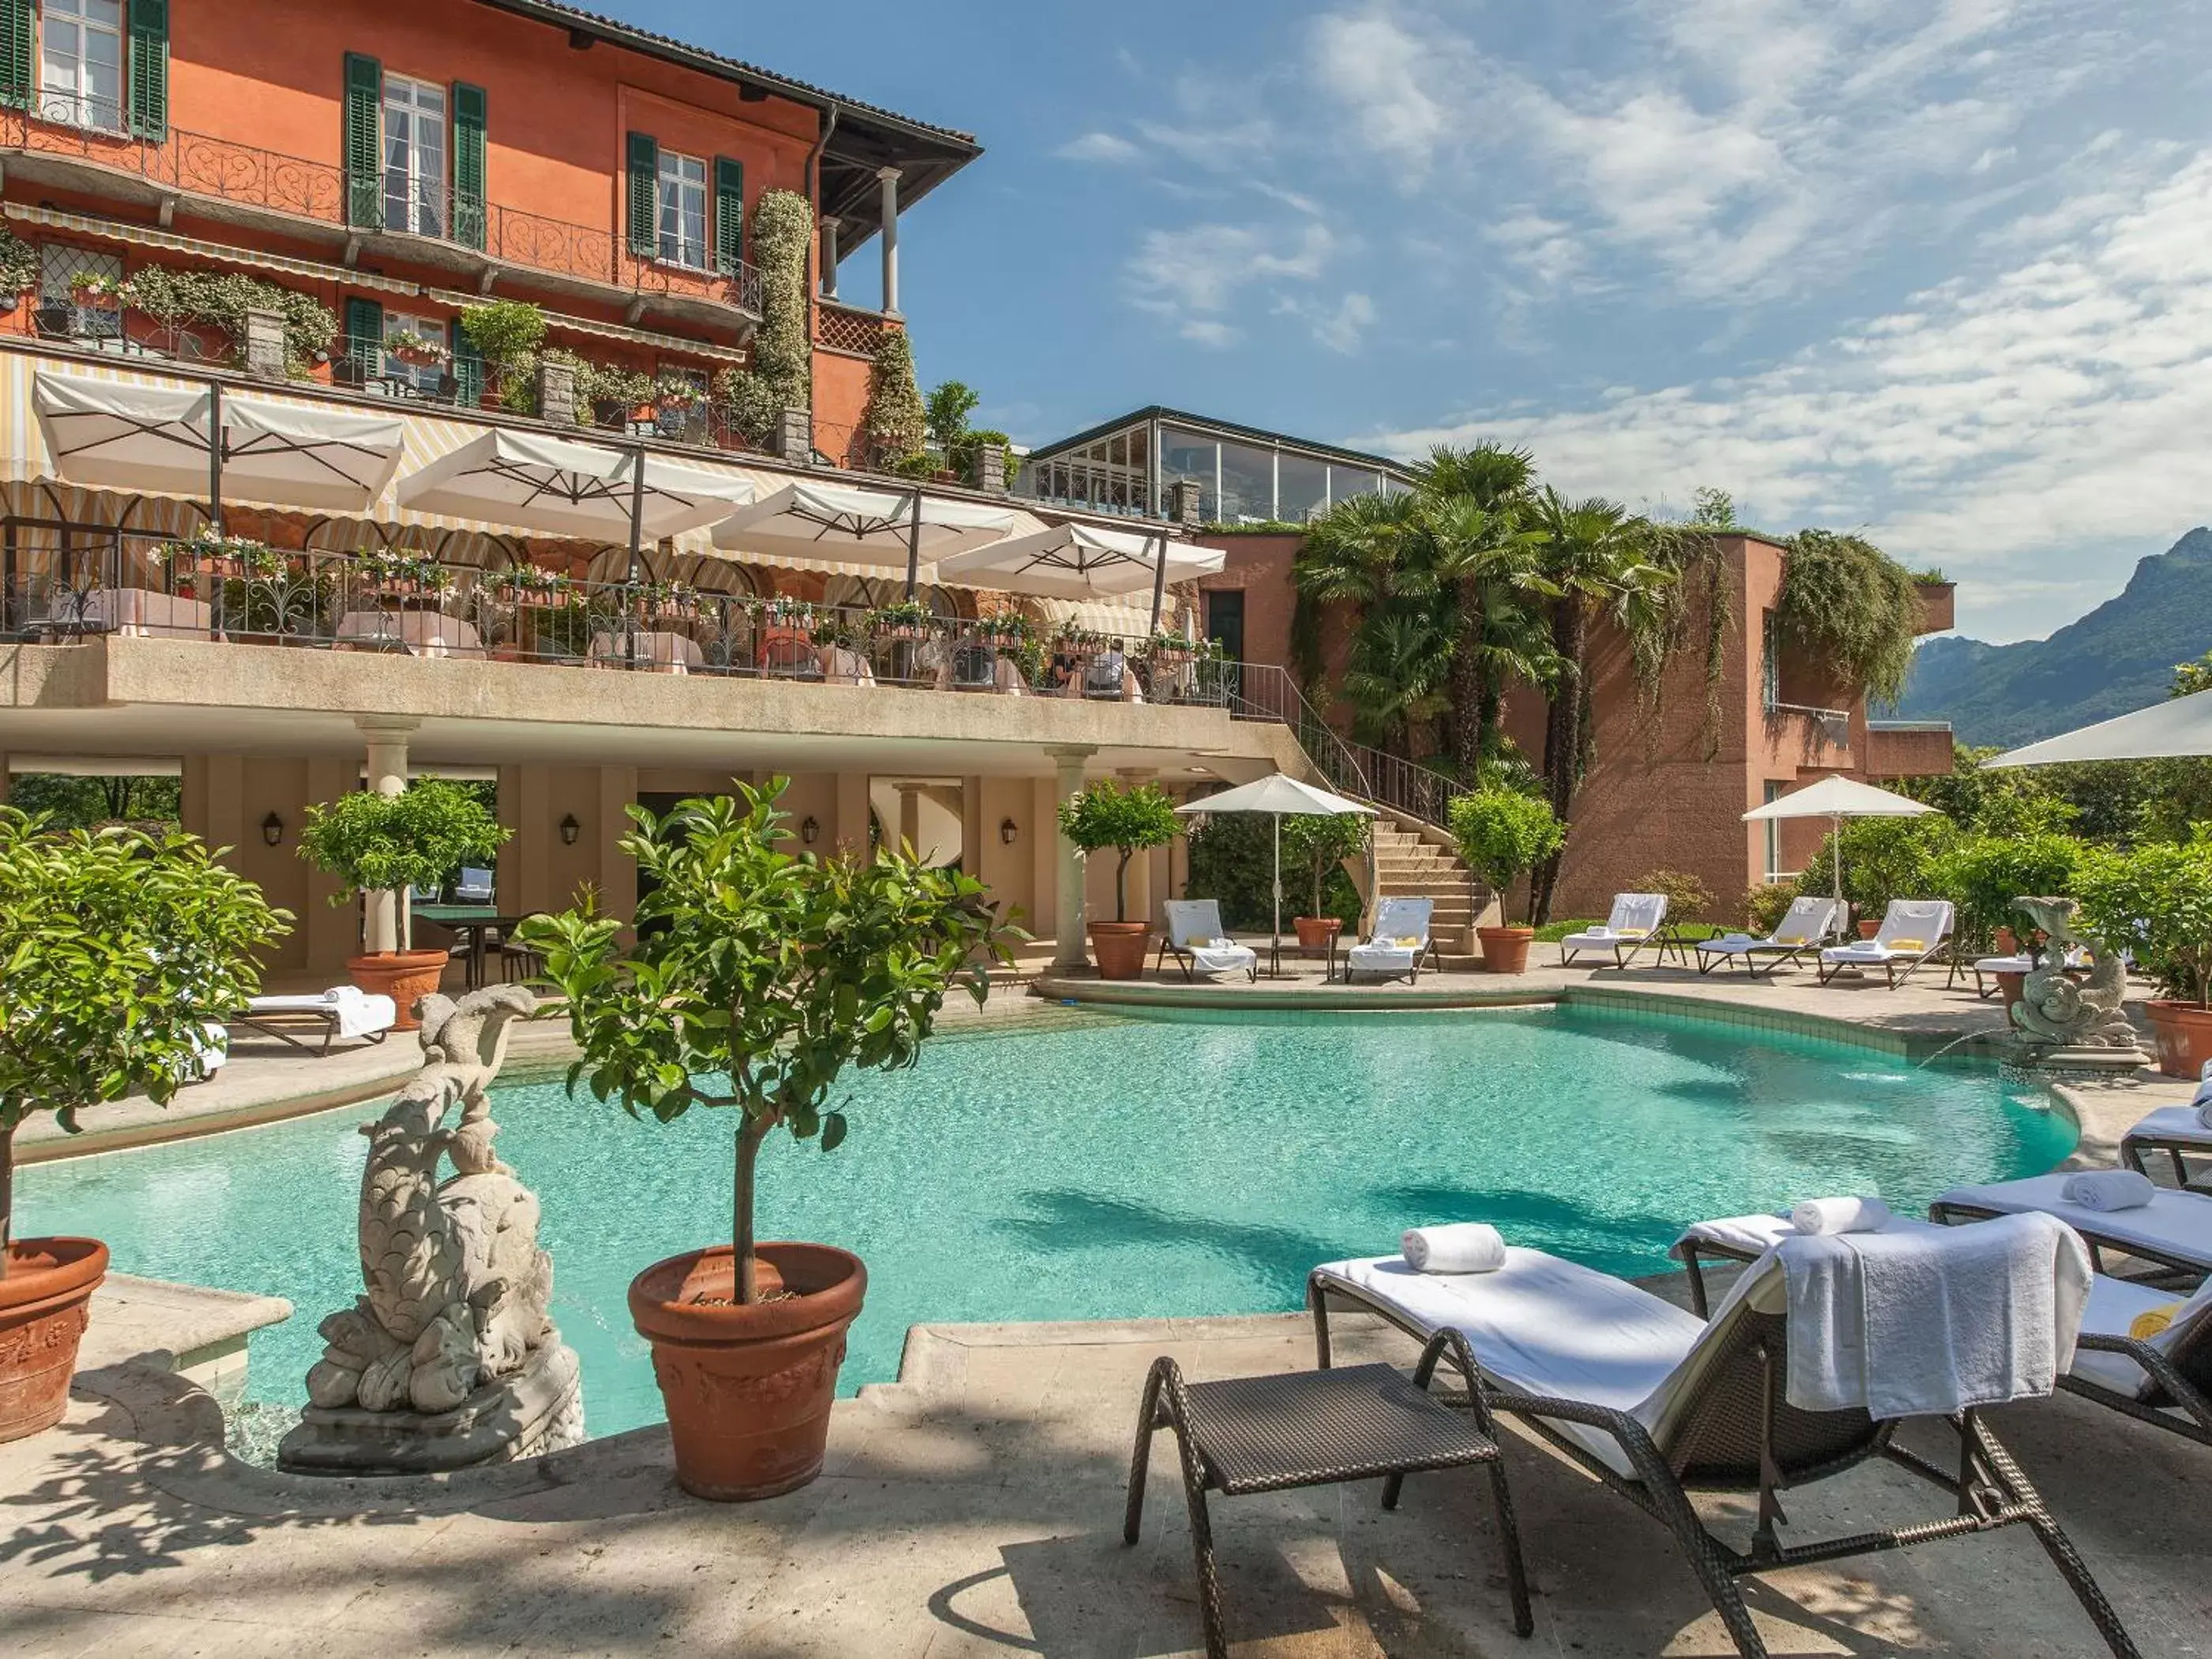 Swimming Pool in Villa Principe Leopoldo - Ticino Hotels Group